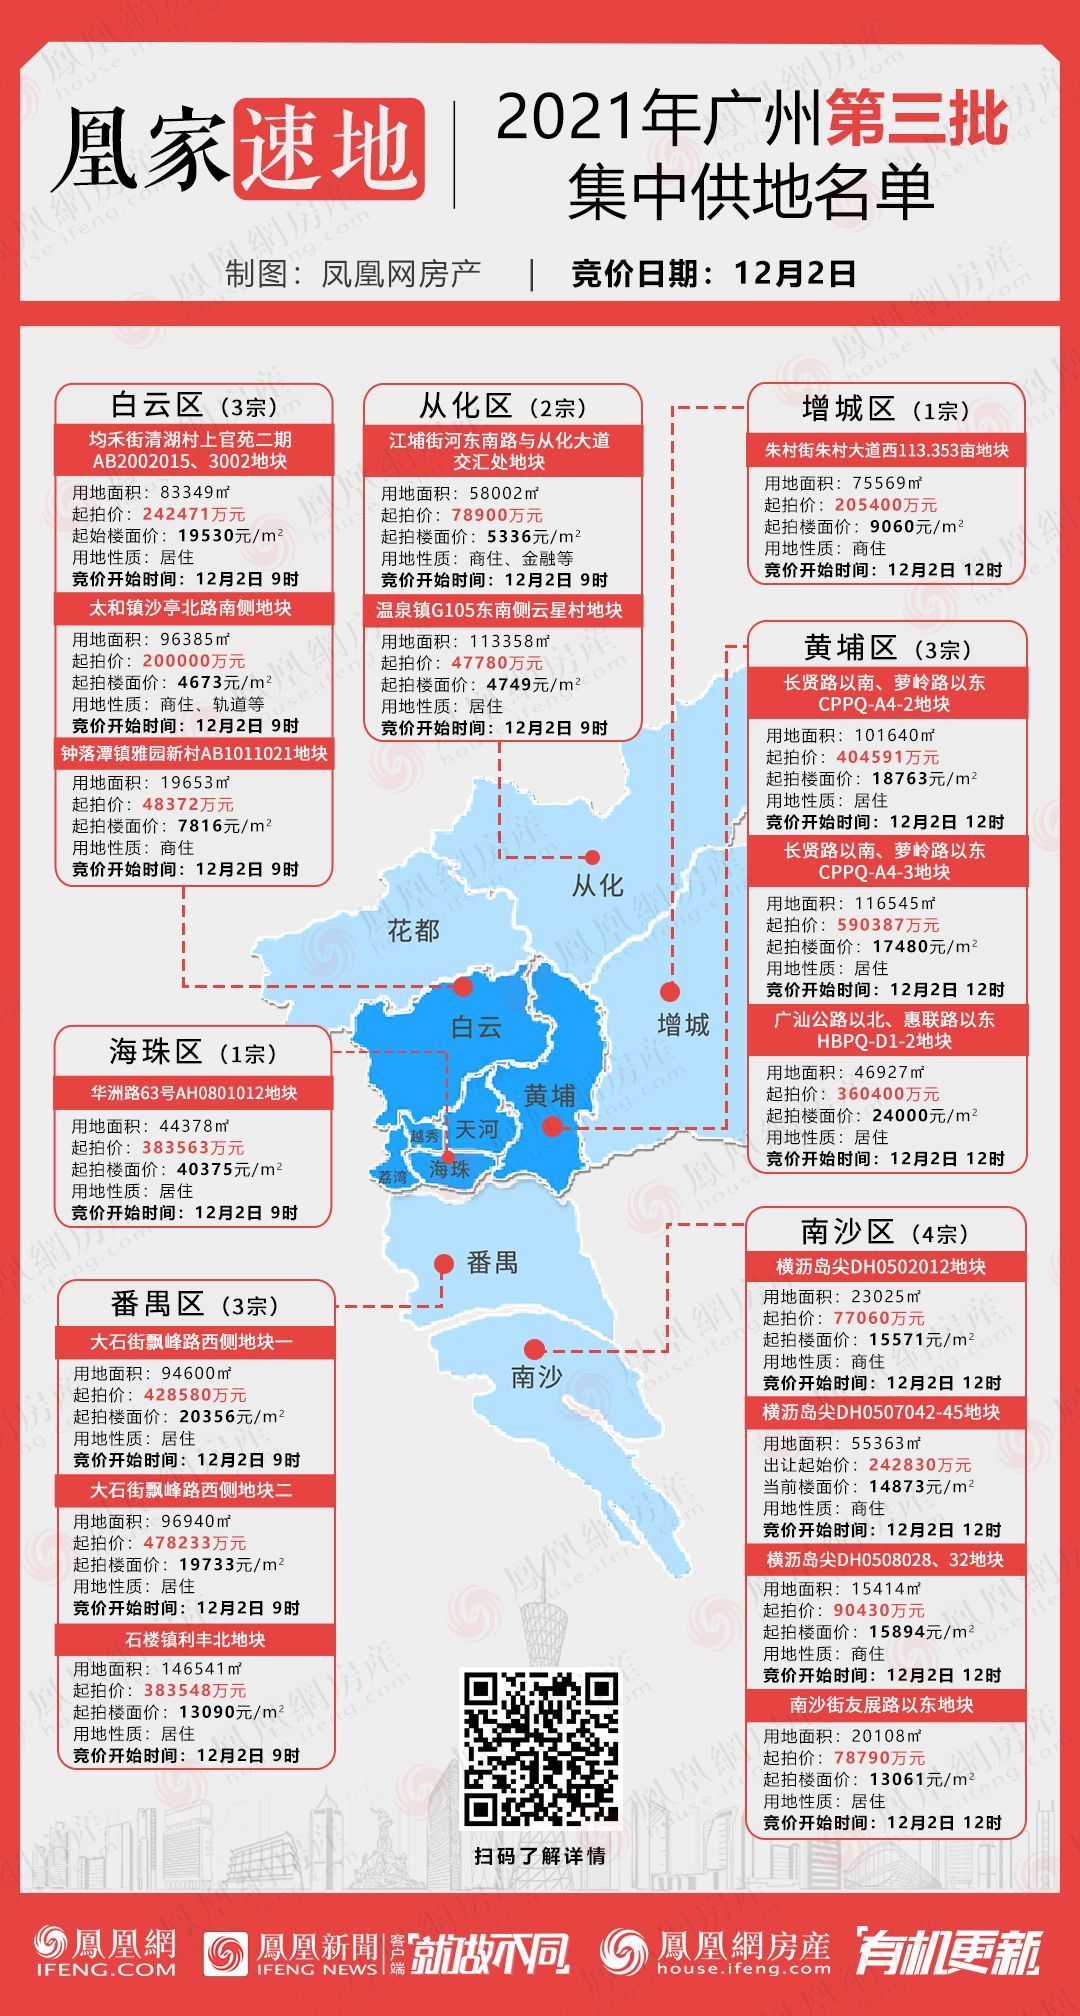 2021年广州第三批集中供地名单